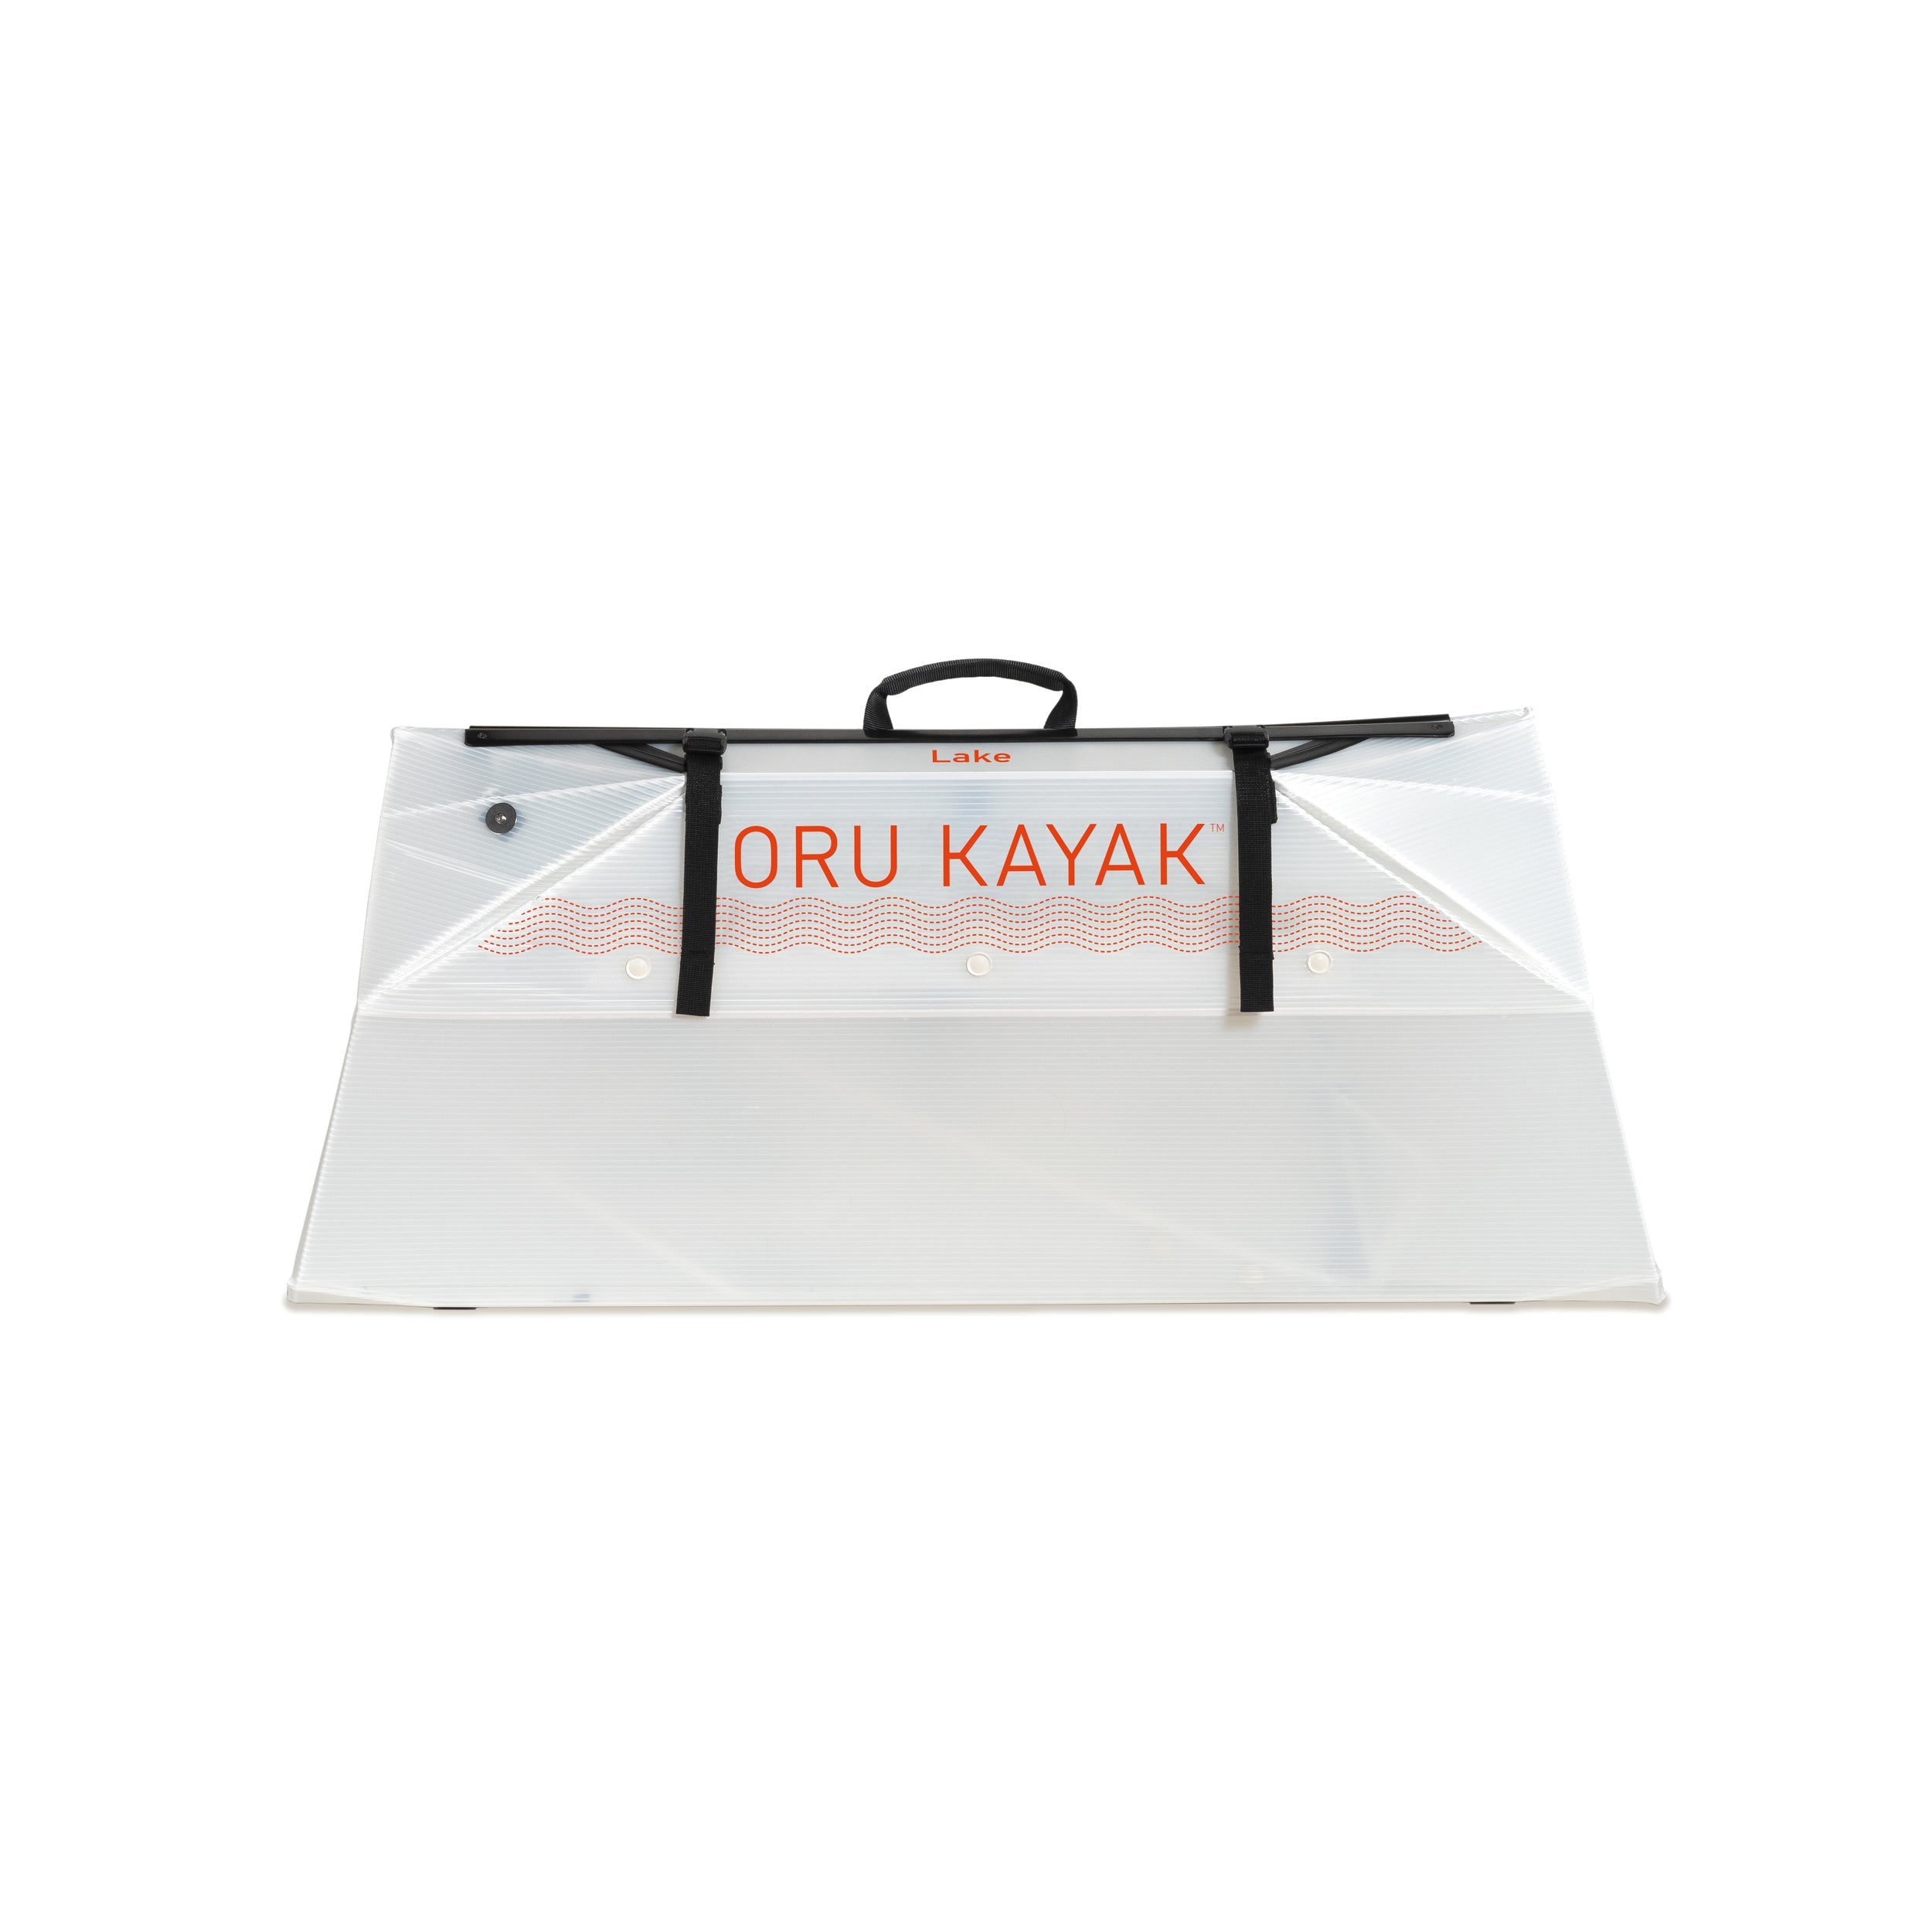 Oru Kayak Lake Sport Foldable Kayak White